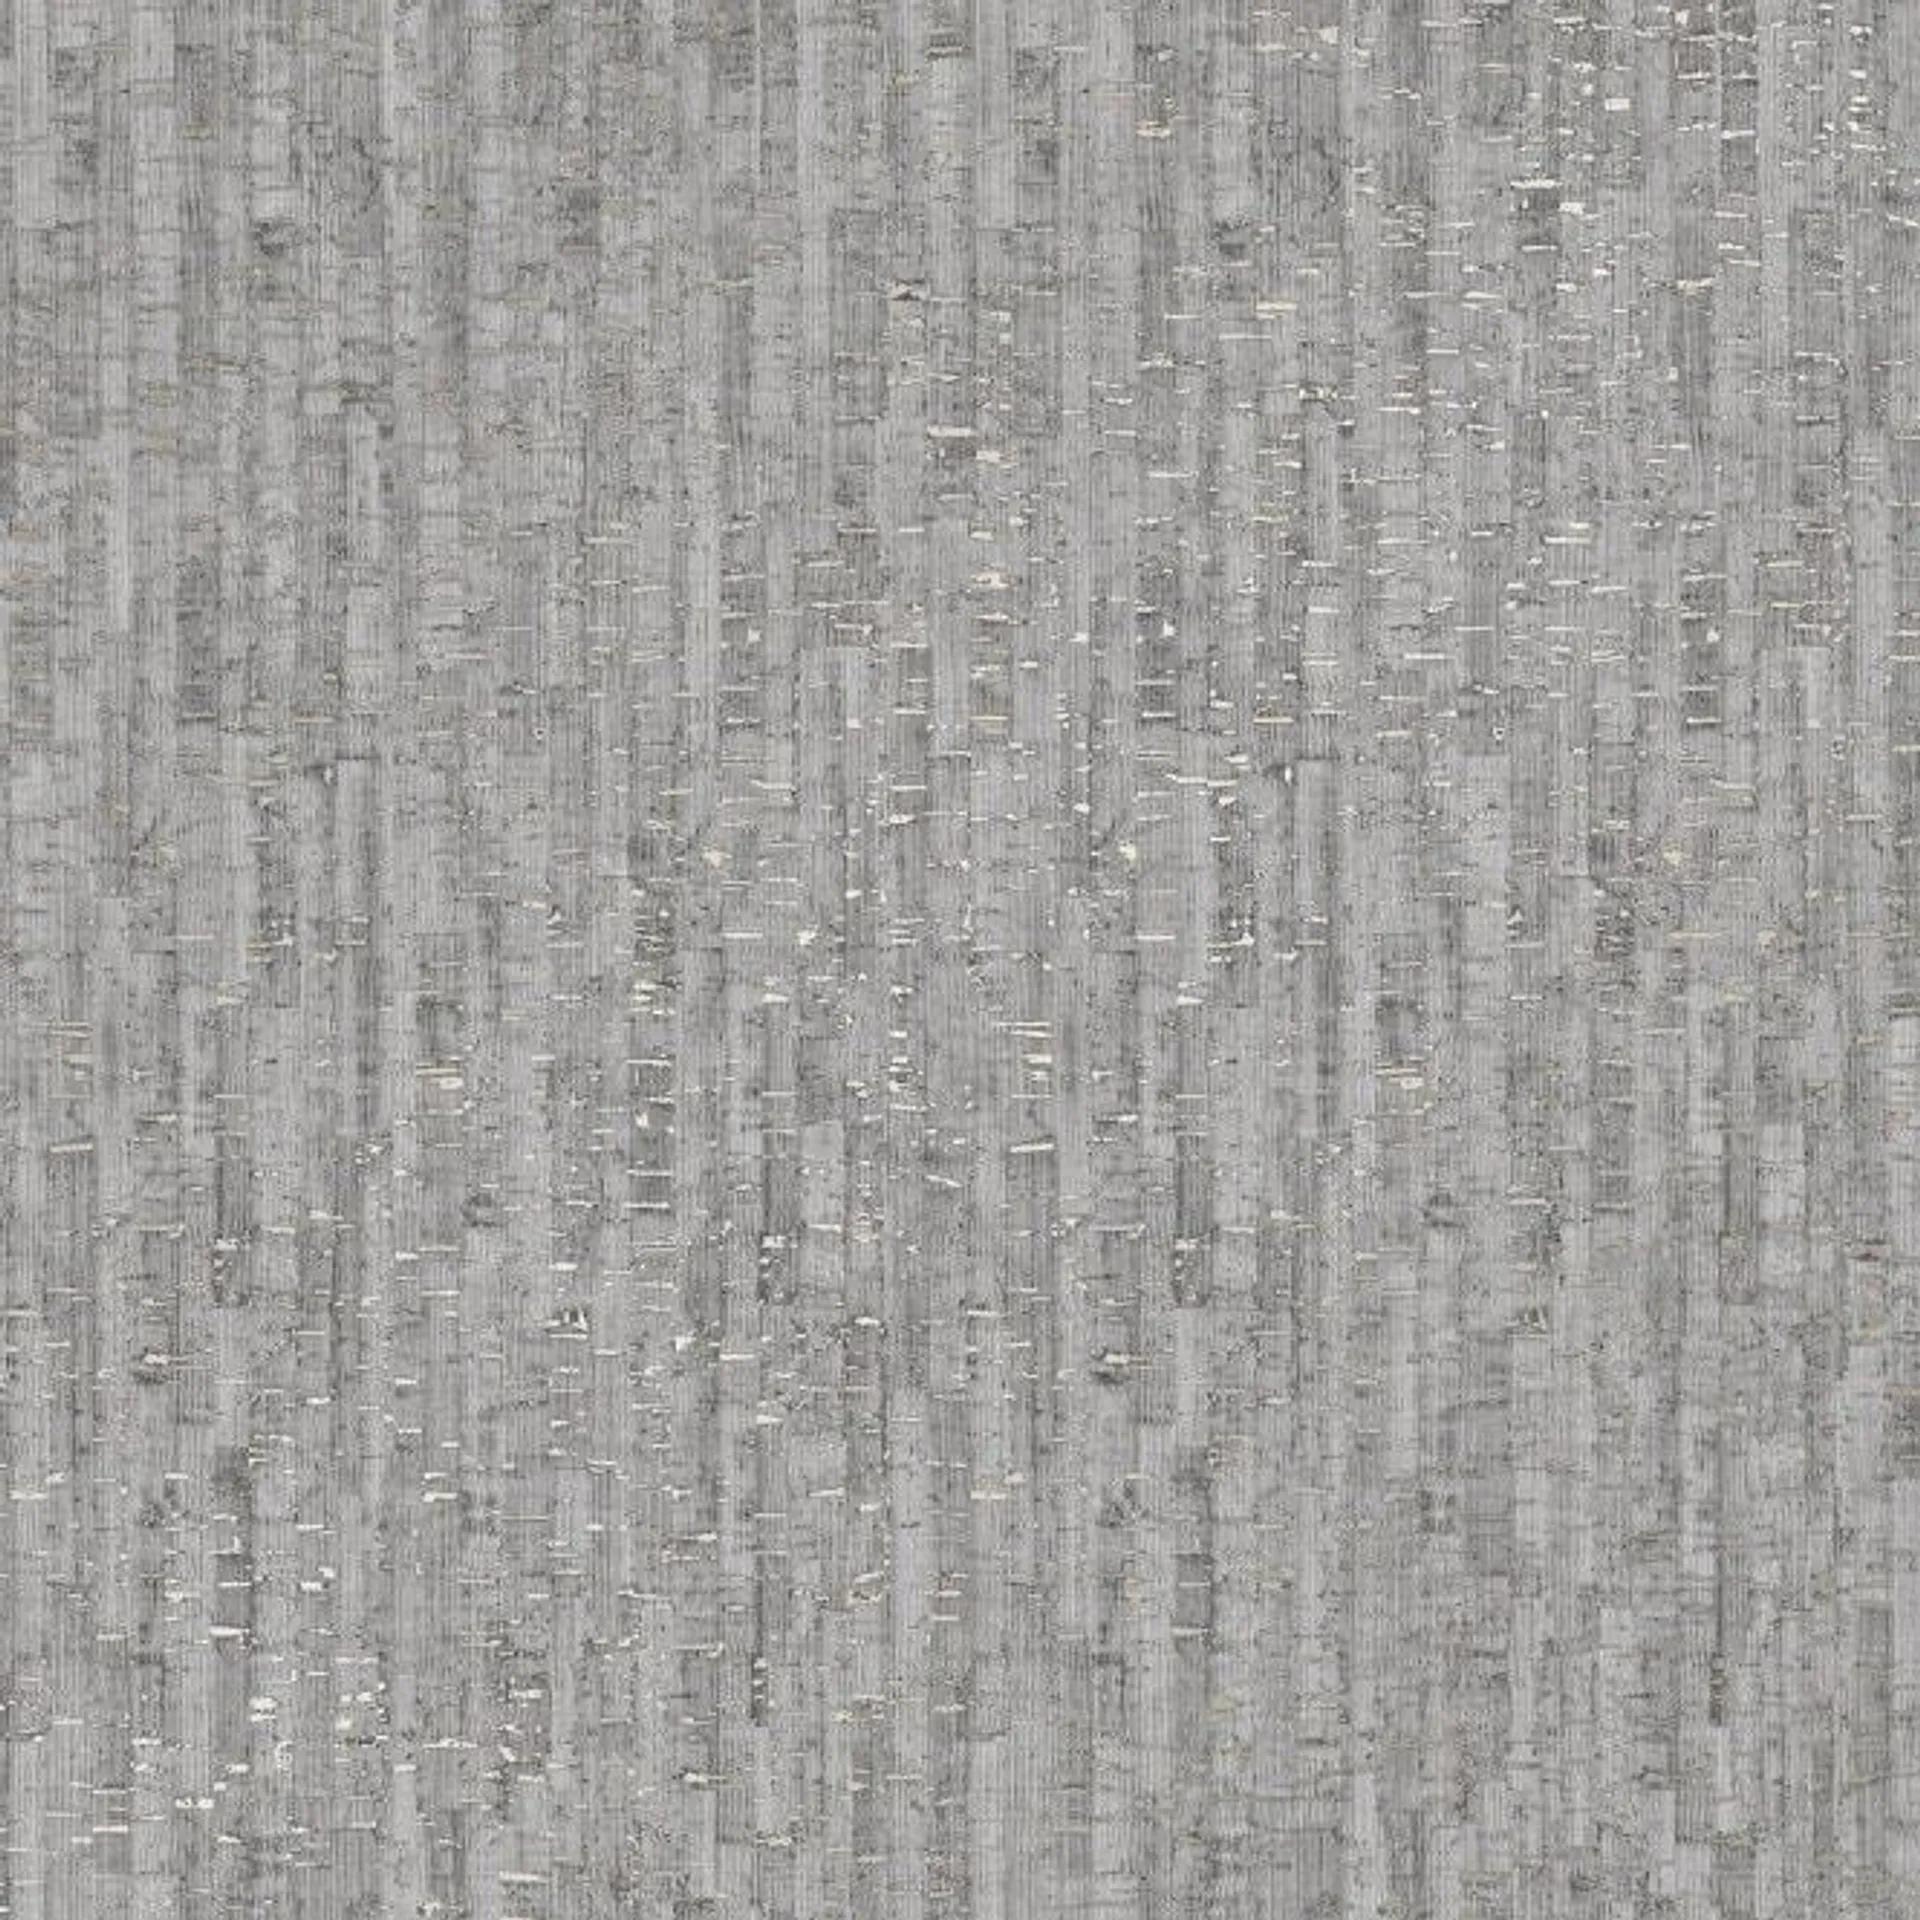 Natural Cork wallpaper in grey